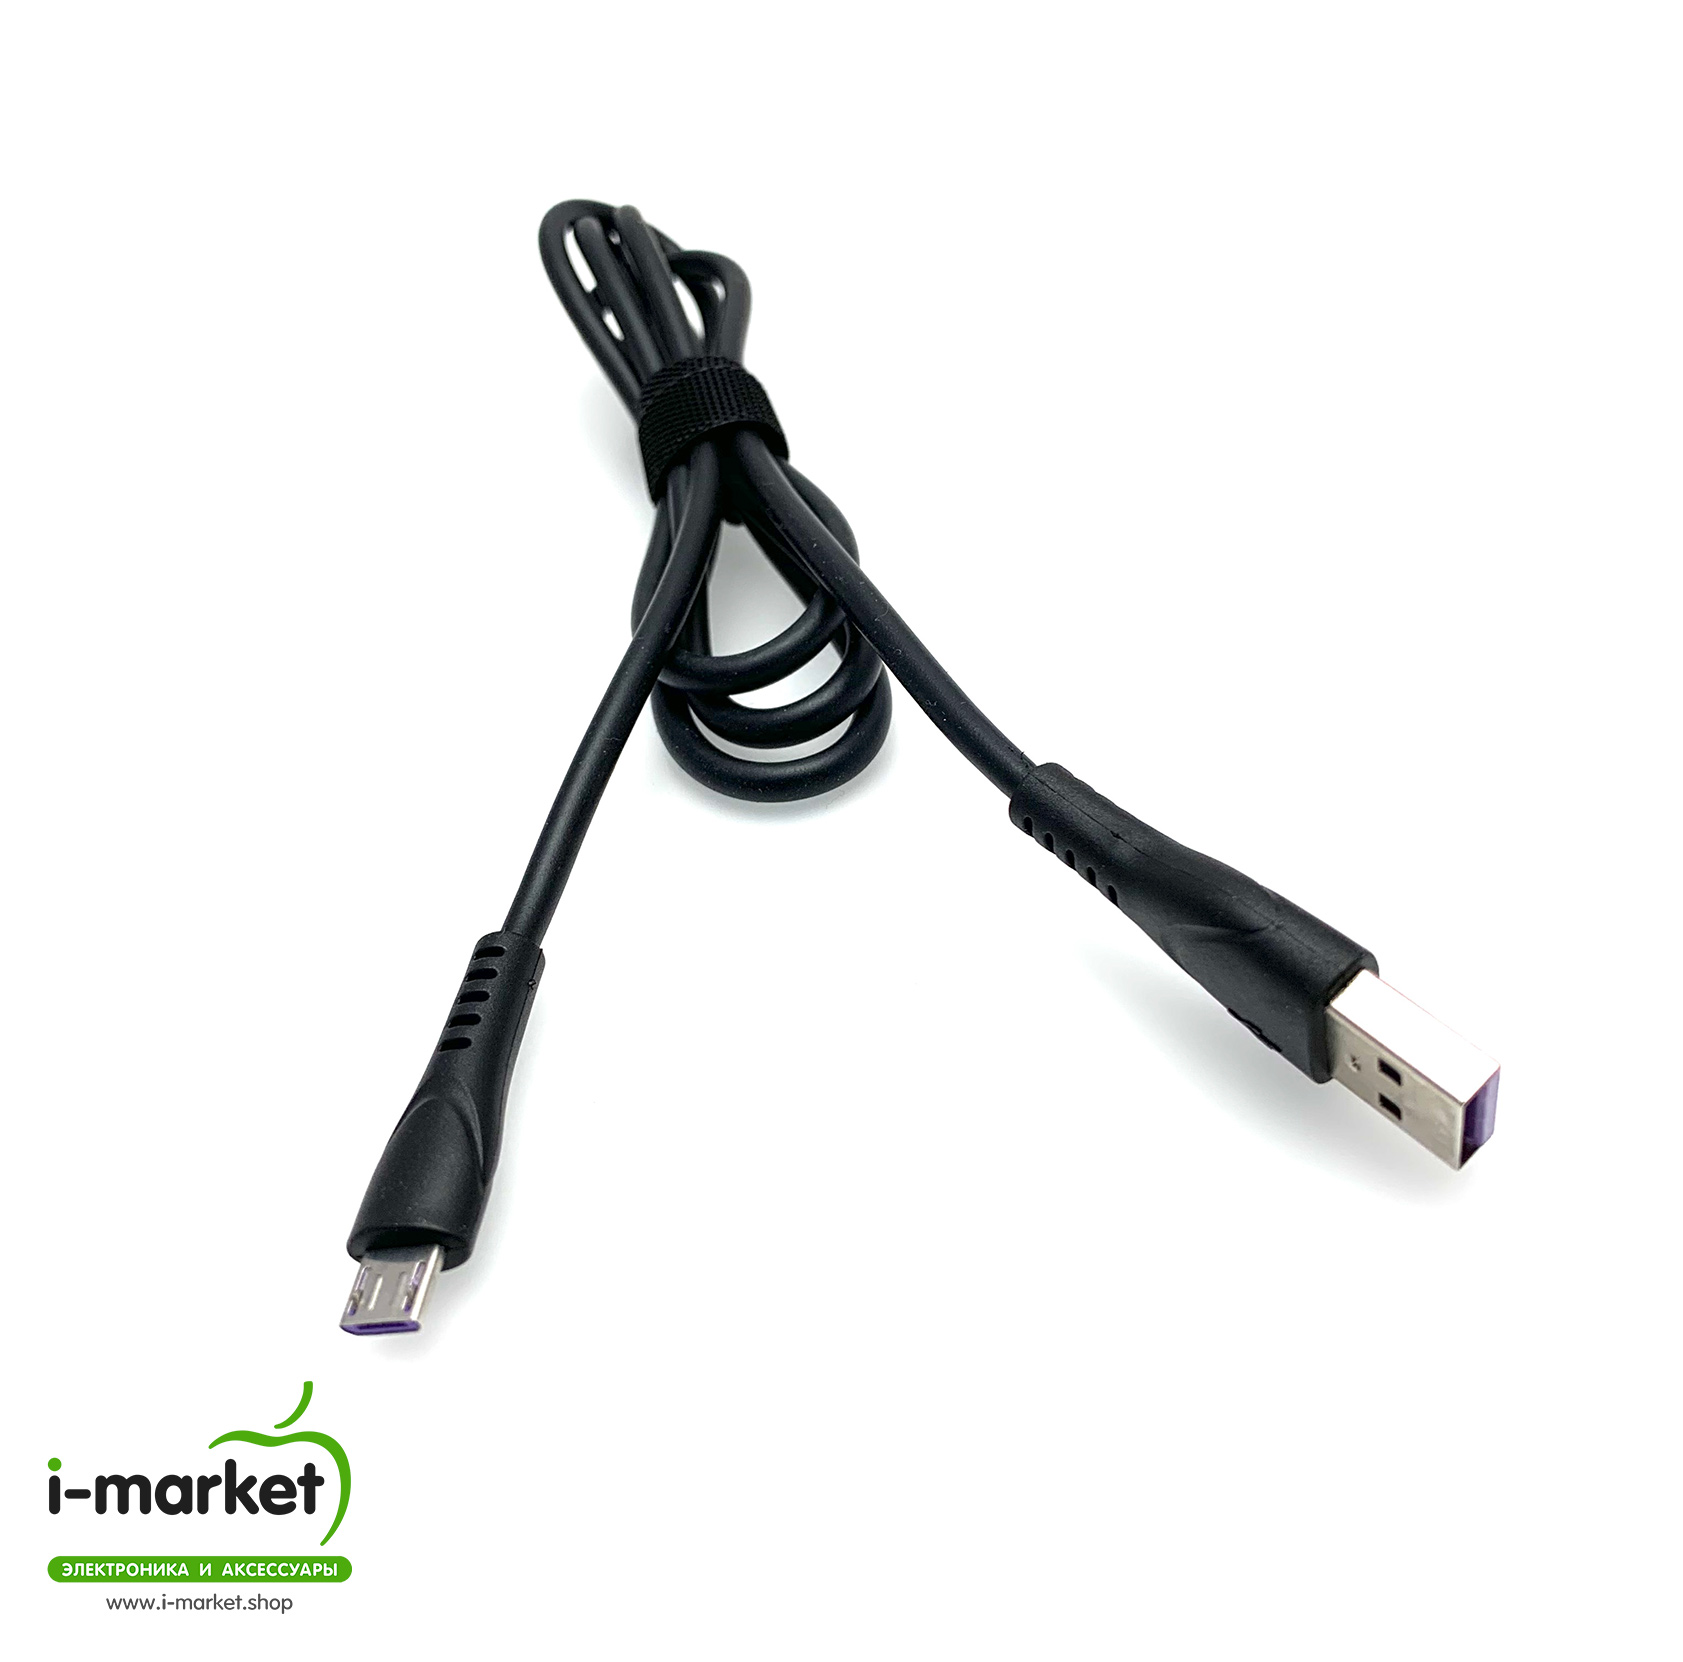 USB Дата-кабель "R18" Micro USB силиконовый эластичный, морозоустойчивый, 1 метр черного цвета, фиолетовые контакты.